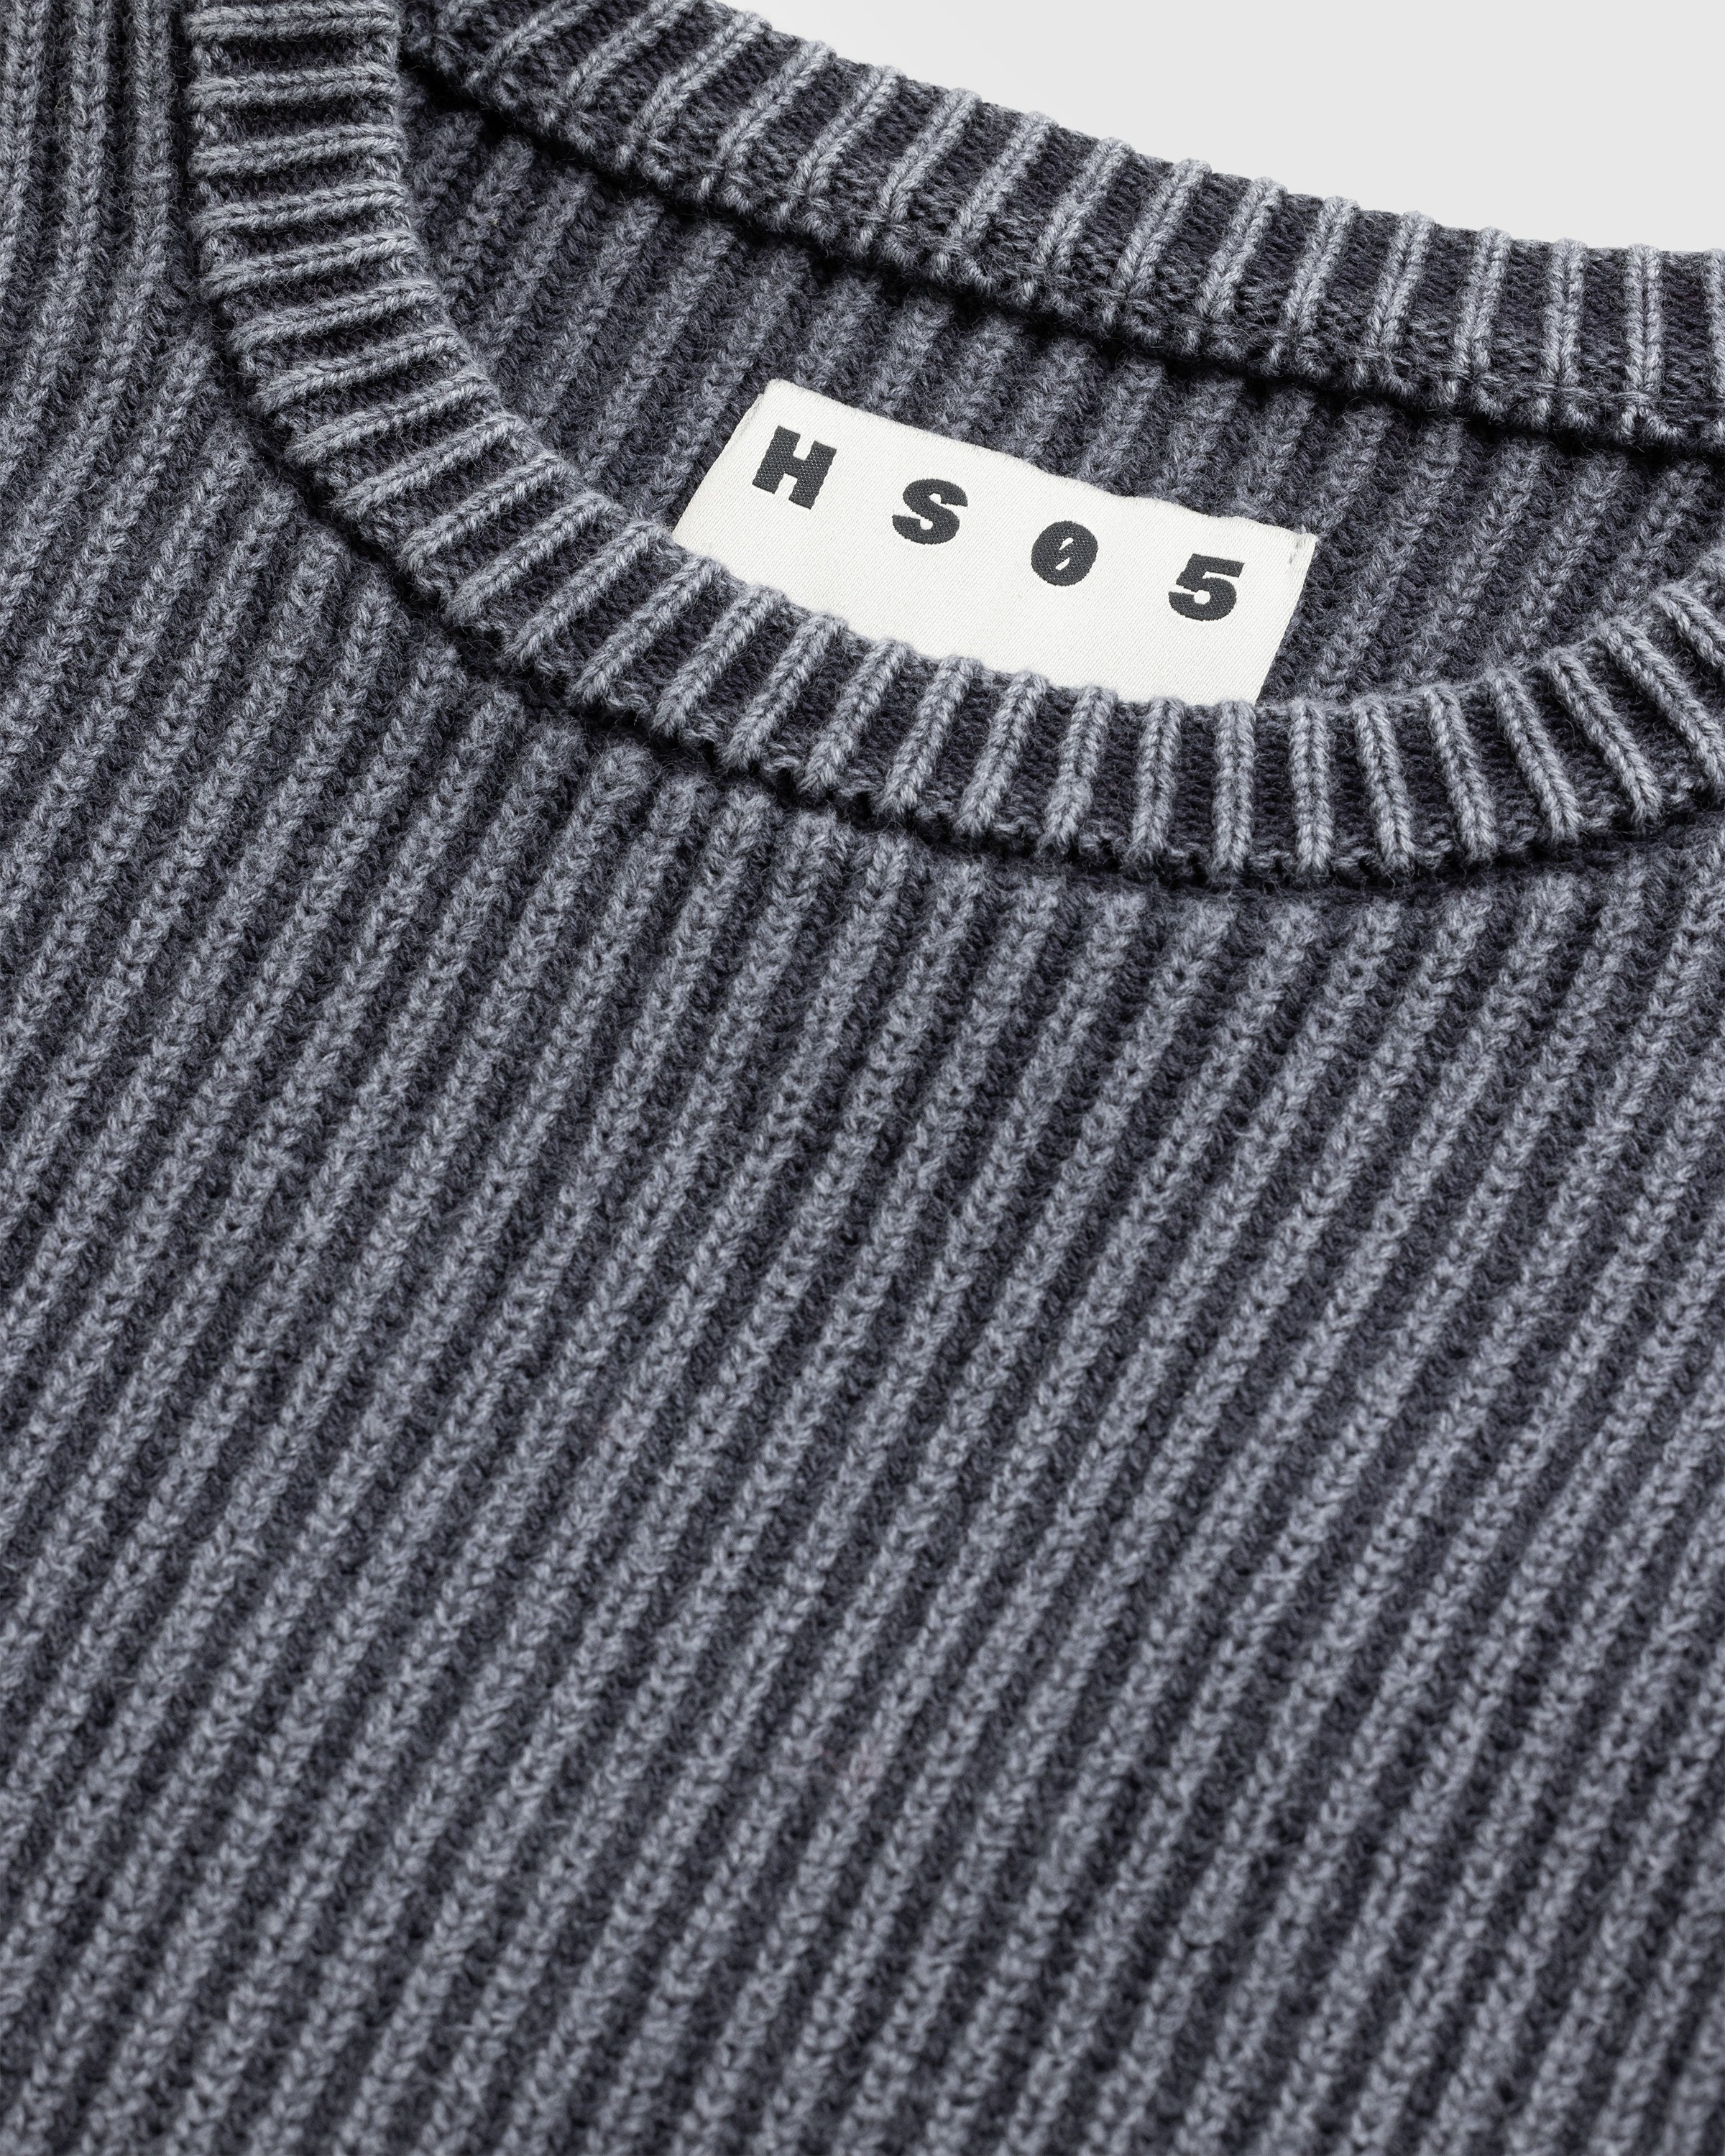 Highsnobiety HS05 - Pigment Dyed Sweater Washed Black - Clothing - Washed Black - Image 8